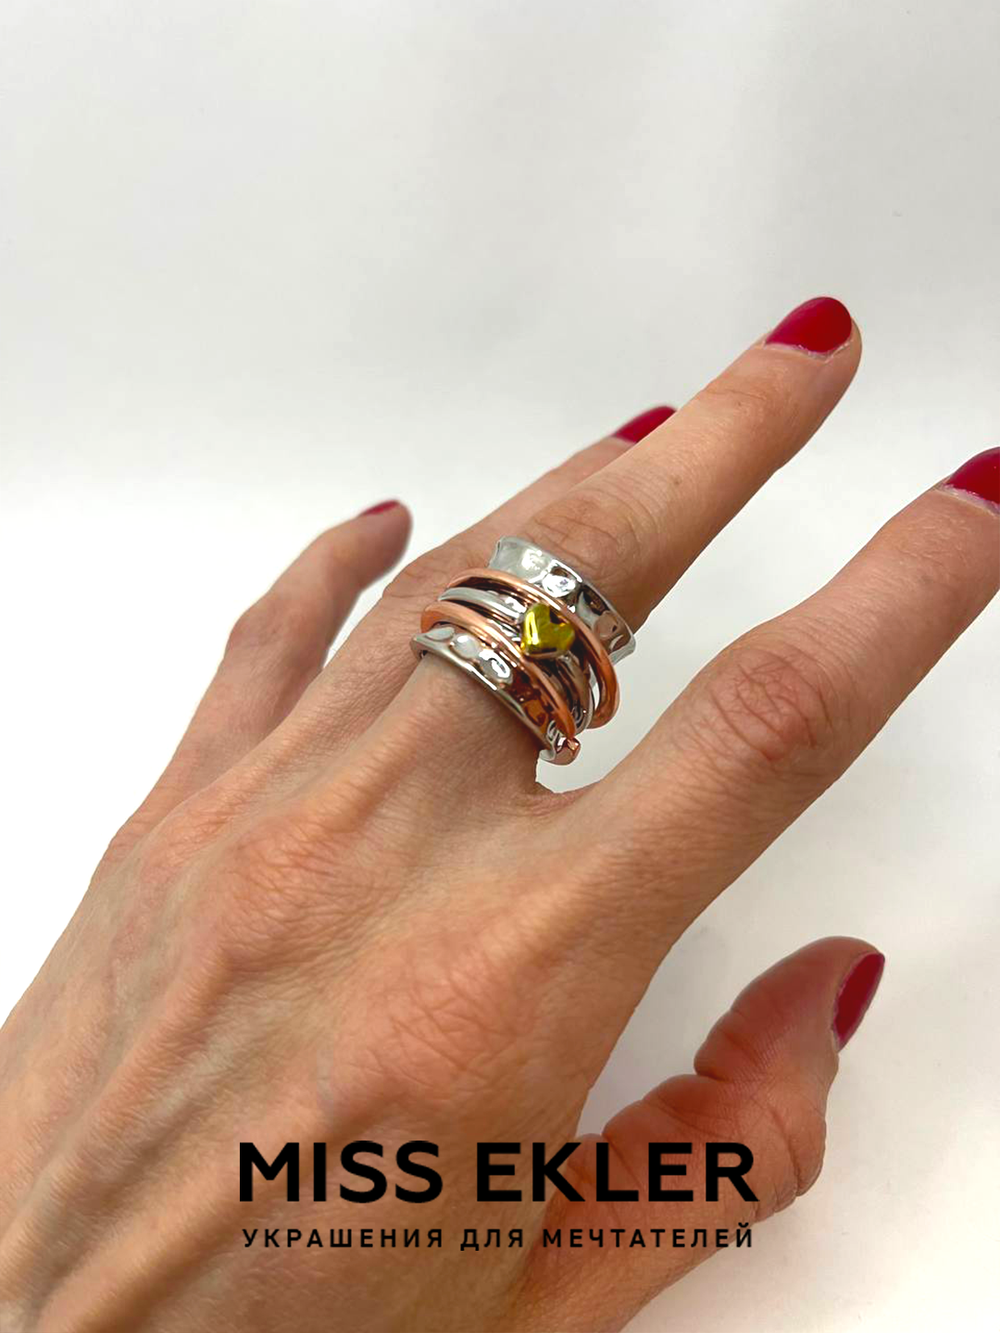 Купить кольцо механизм Miss Ekler